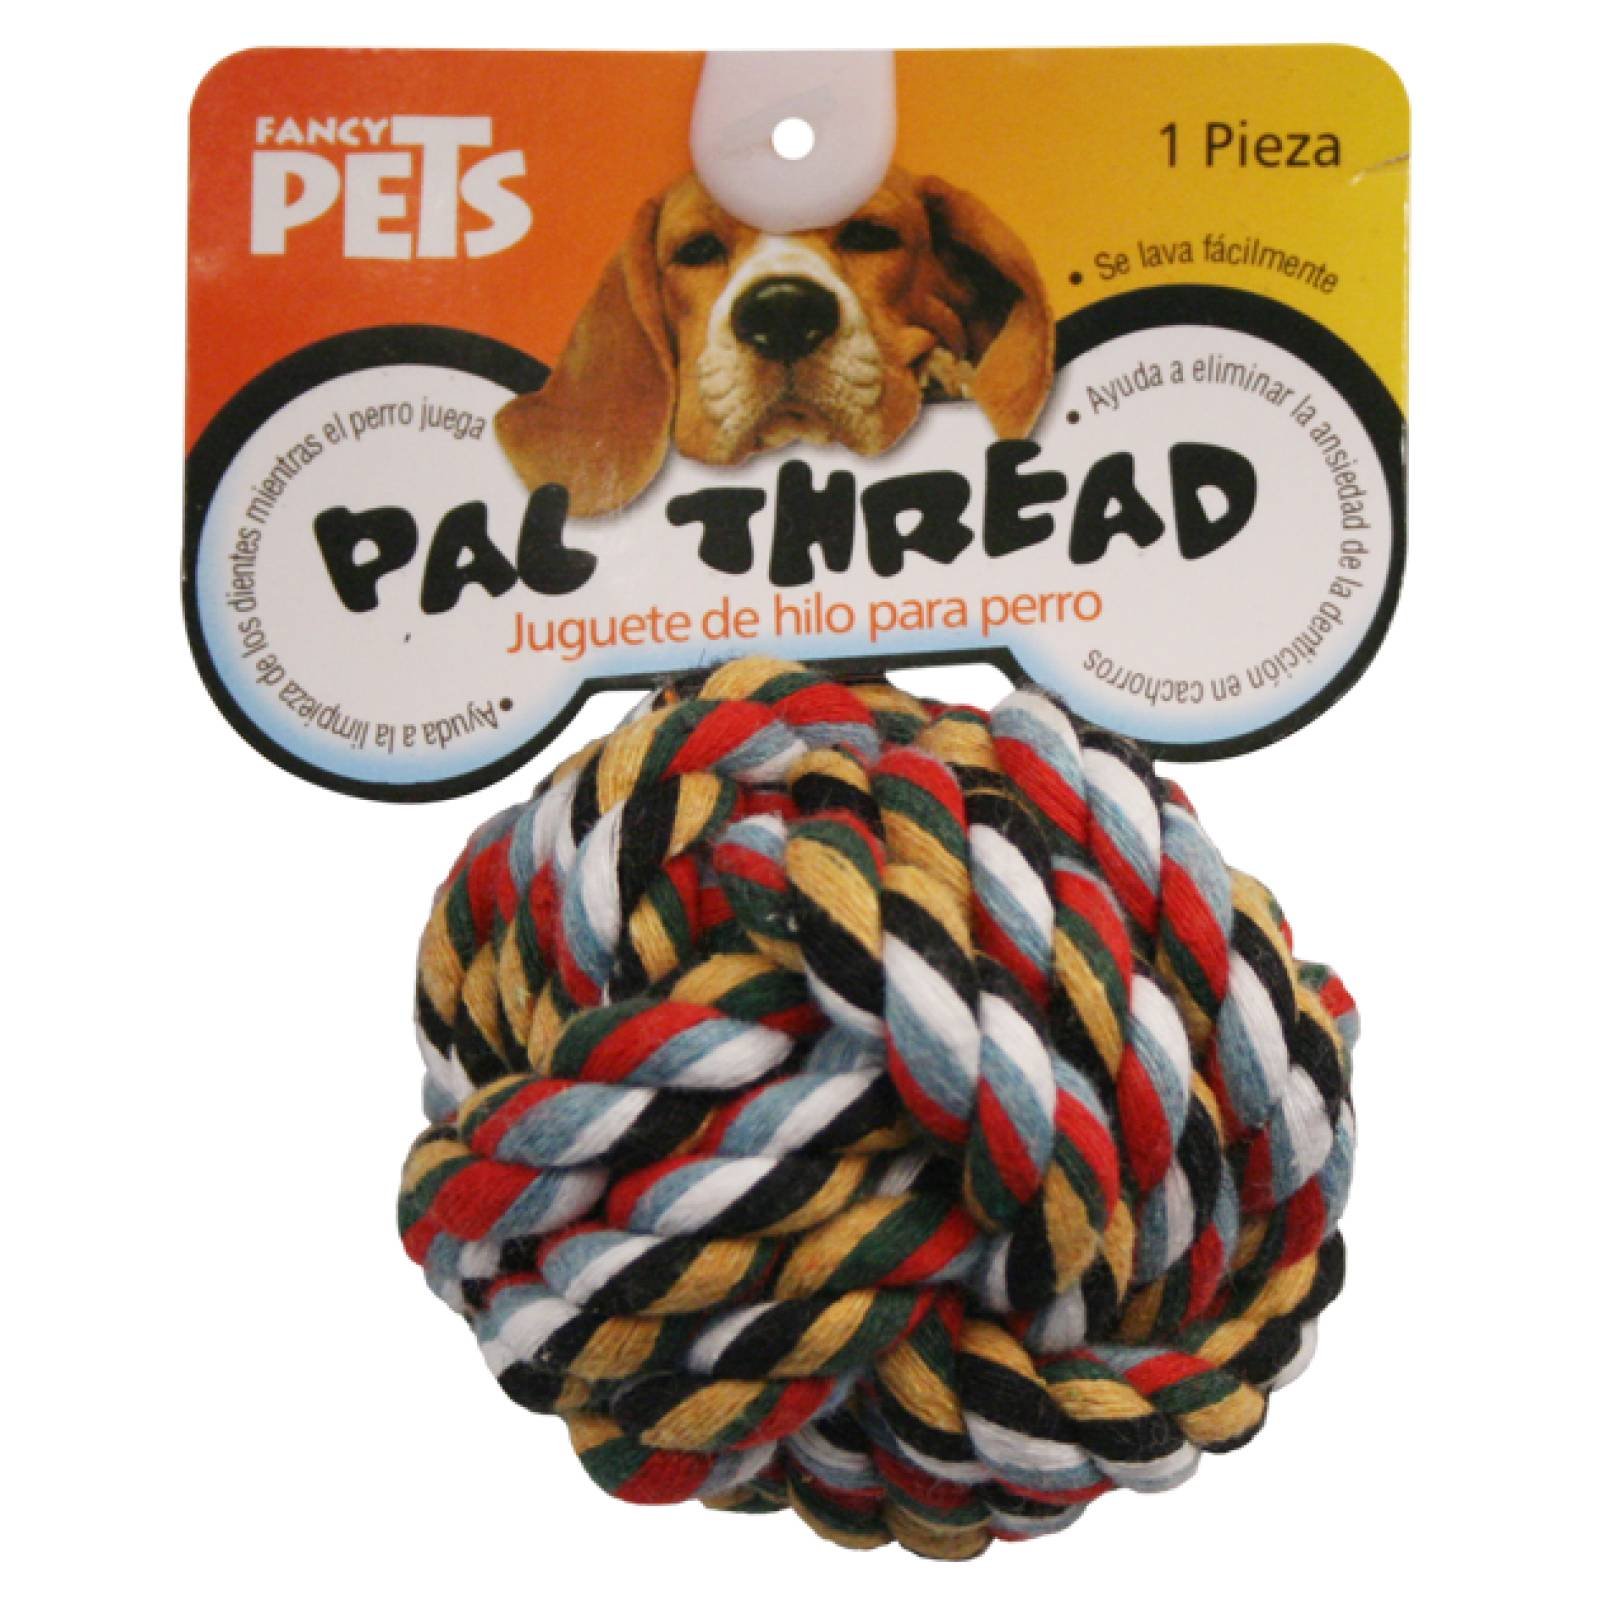 Fancy Pets Juguete para Perro Bola de Hilo de Colores Surtidos 8 cm